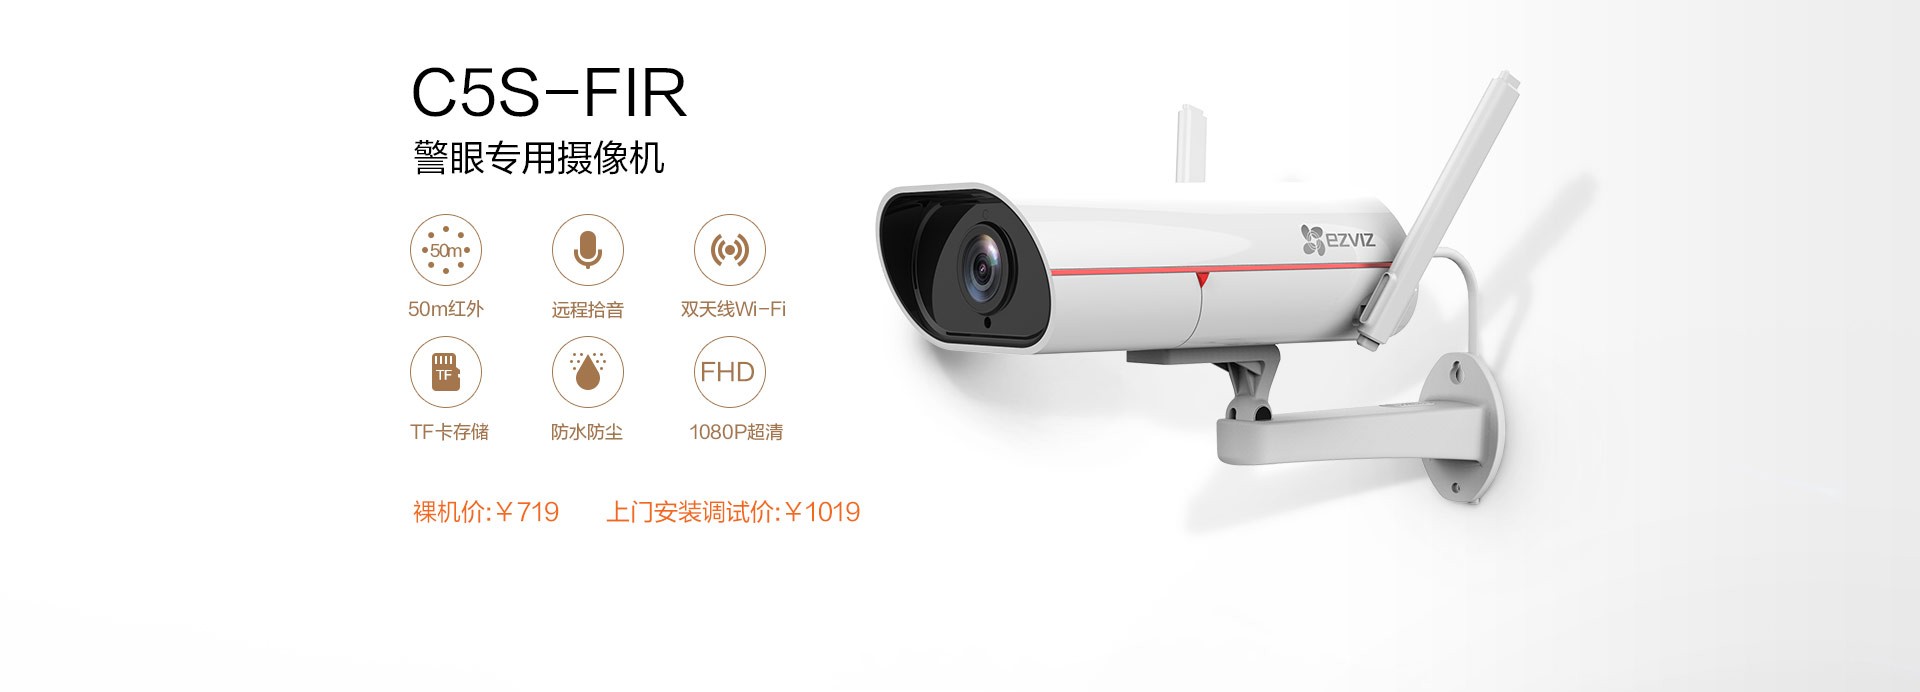 C5S-FIR警眼专用摄像机_02.jpg